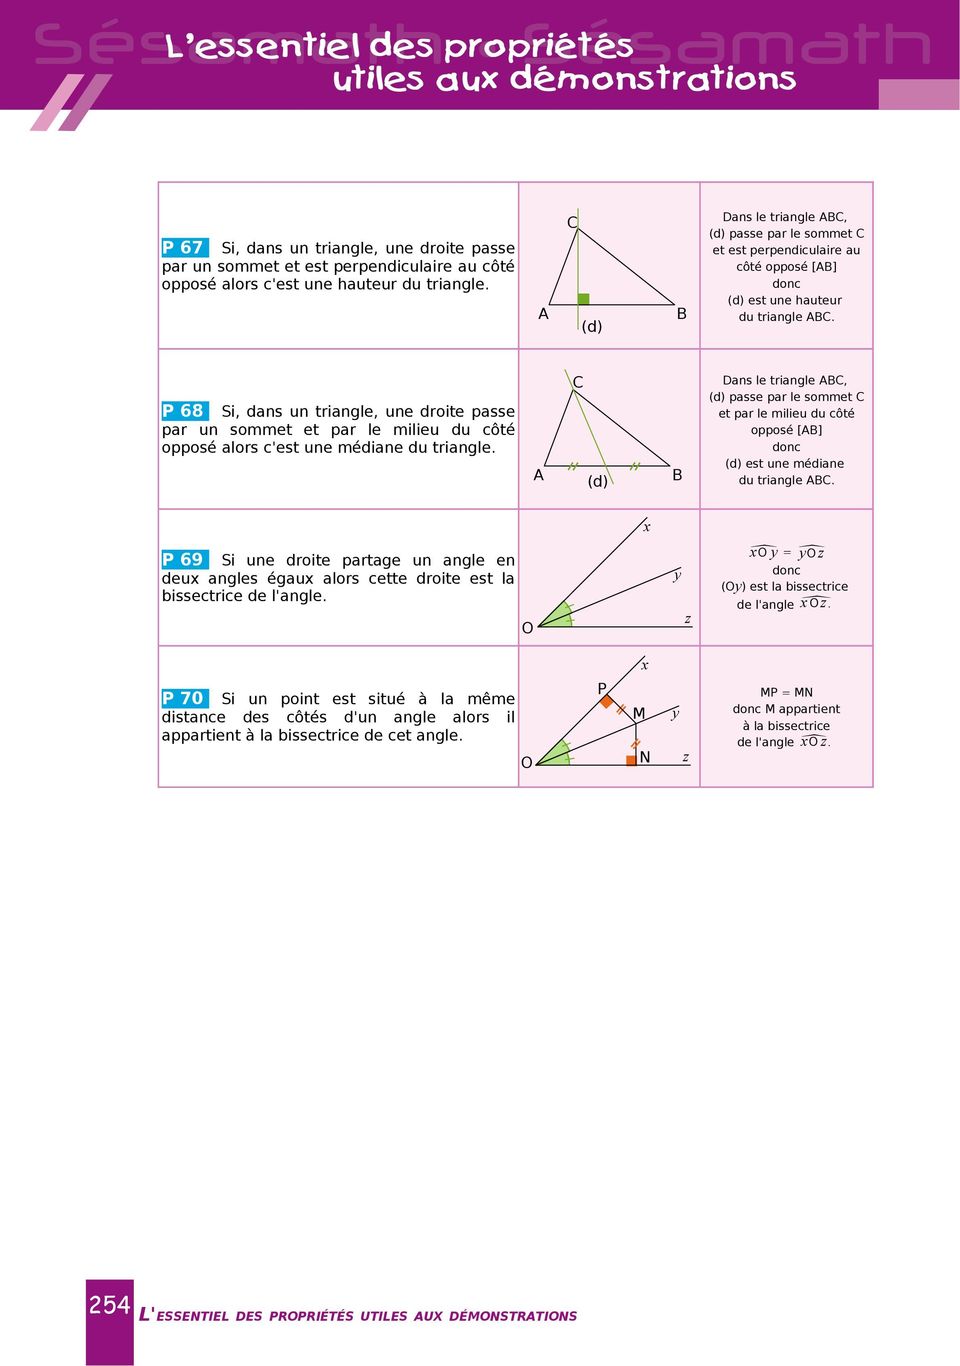 P 68 Si, dans un triangle, une drite passe par un smmet et par le milieu du côté ppsé alrs c'est une médiane du triangle.